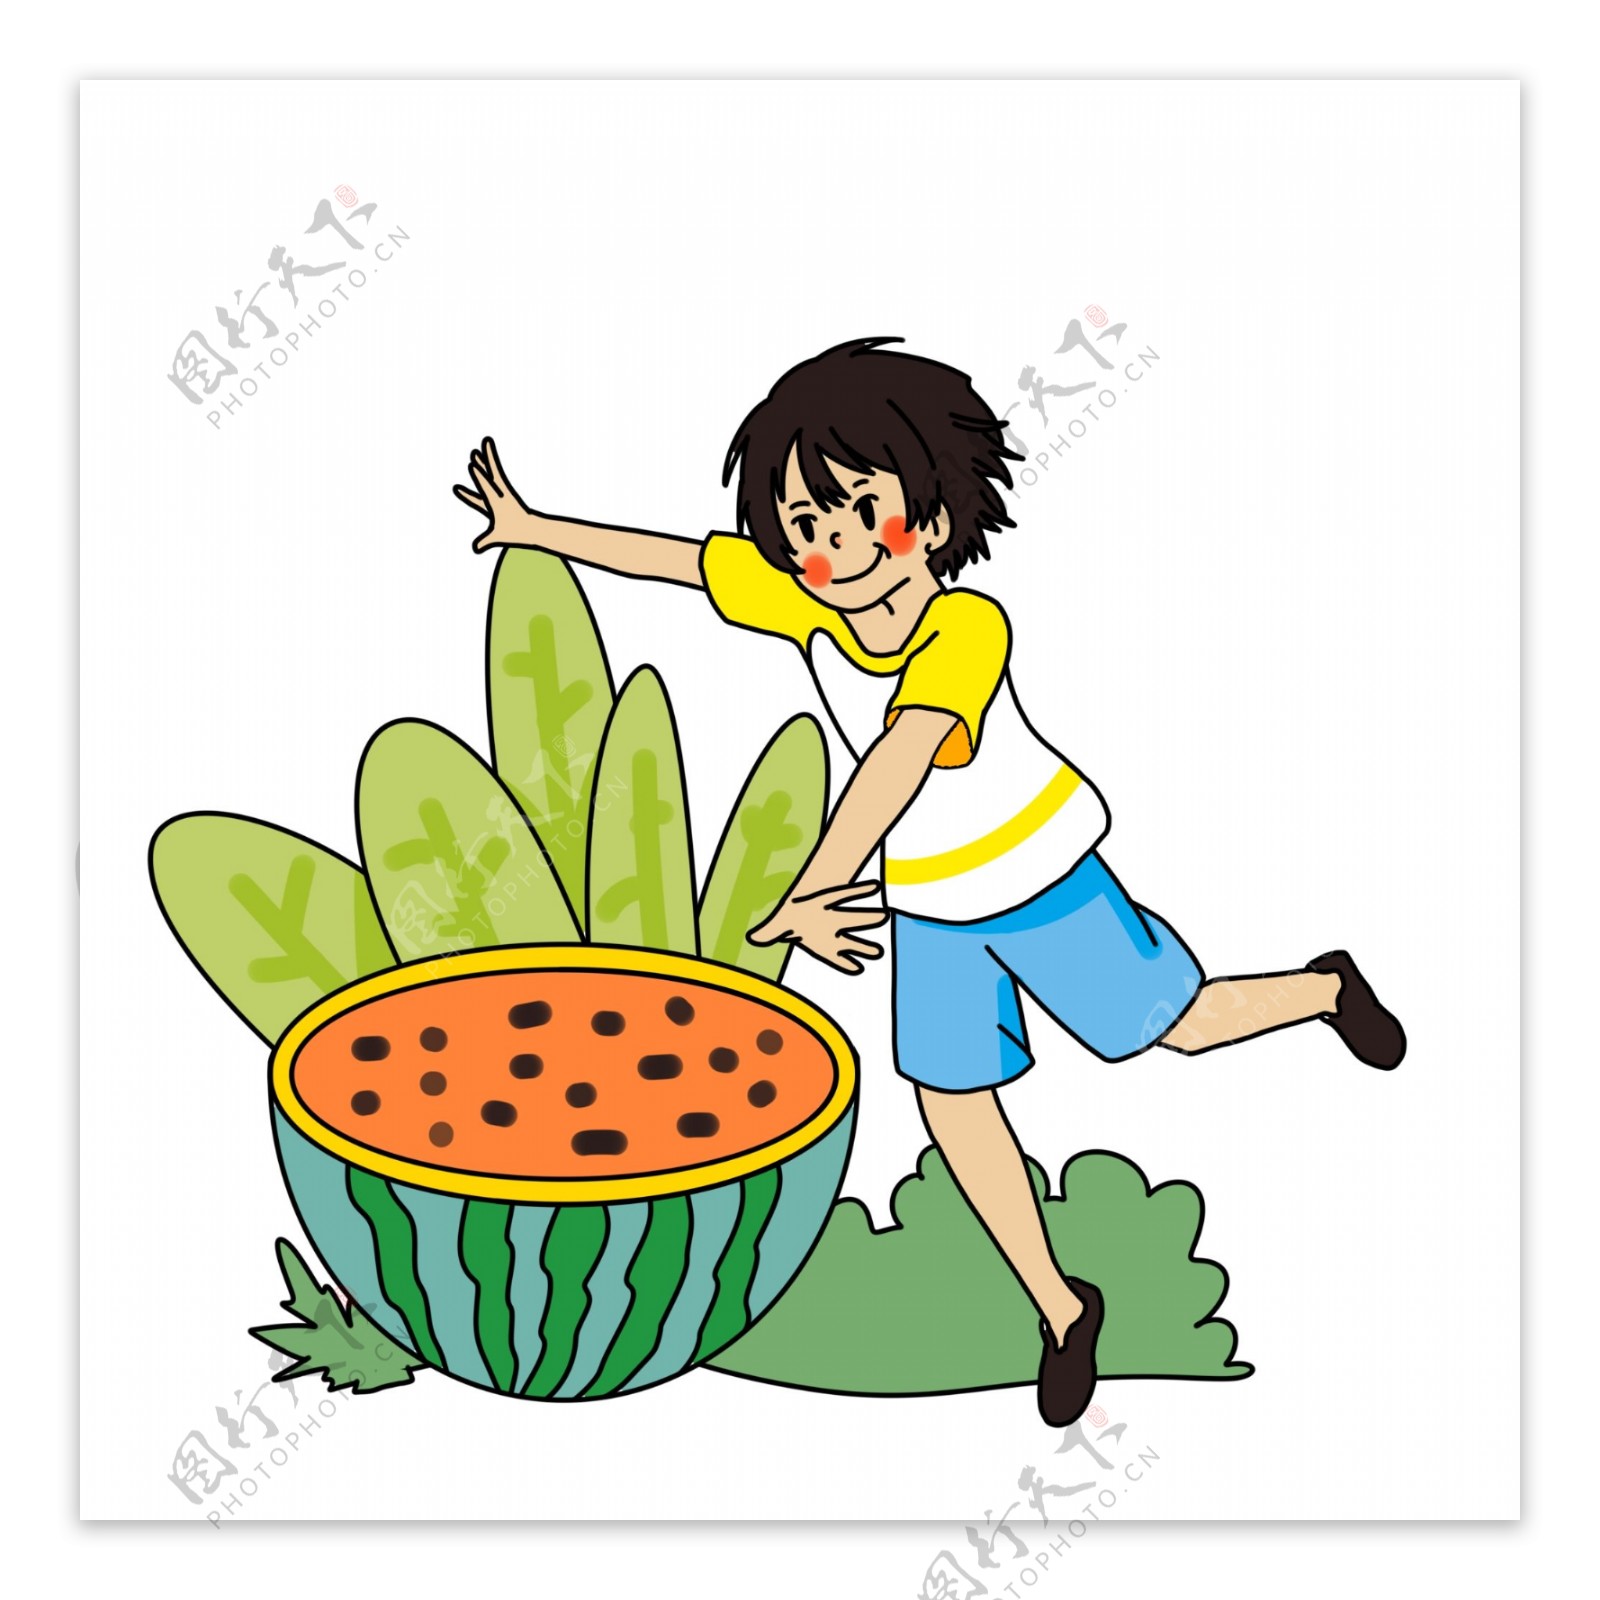 夏日少年开心吃西瓜